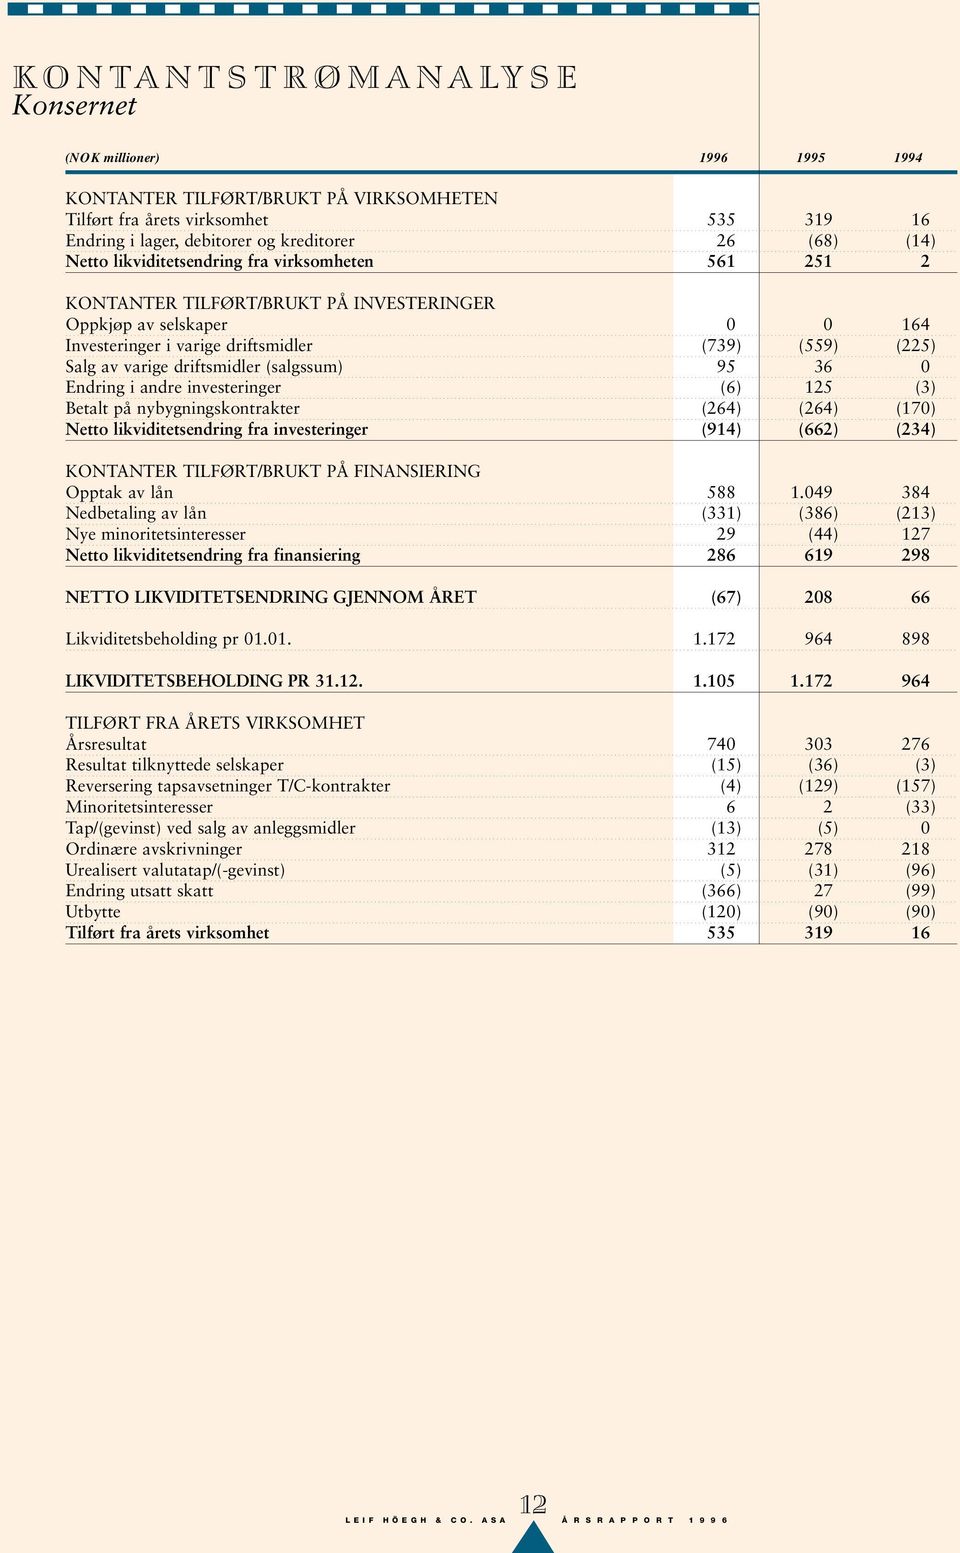 driftsmidler (salgssum) 95 36 0 Endring i andre investeringer (6) 125 (3) Betalt på nybygningskontrakter (264) (264) (170) Netto likviditetsendring fra investeringer (914) (662) (234) KONTANTER